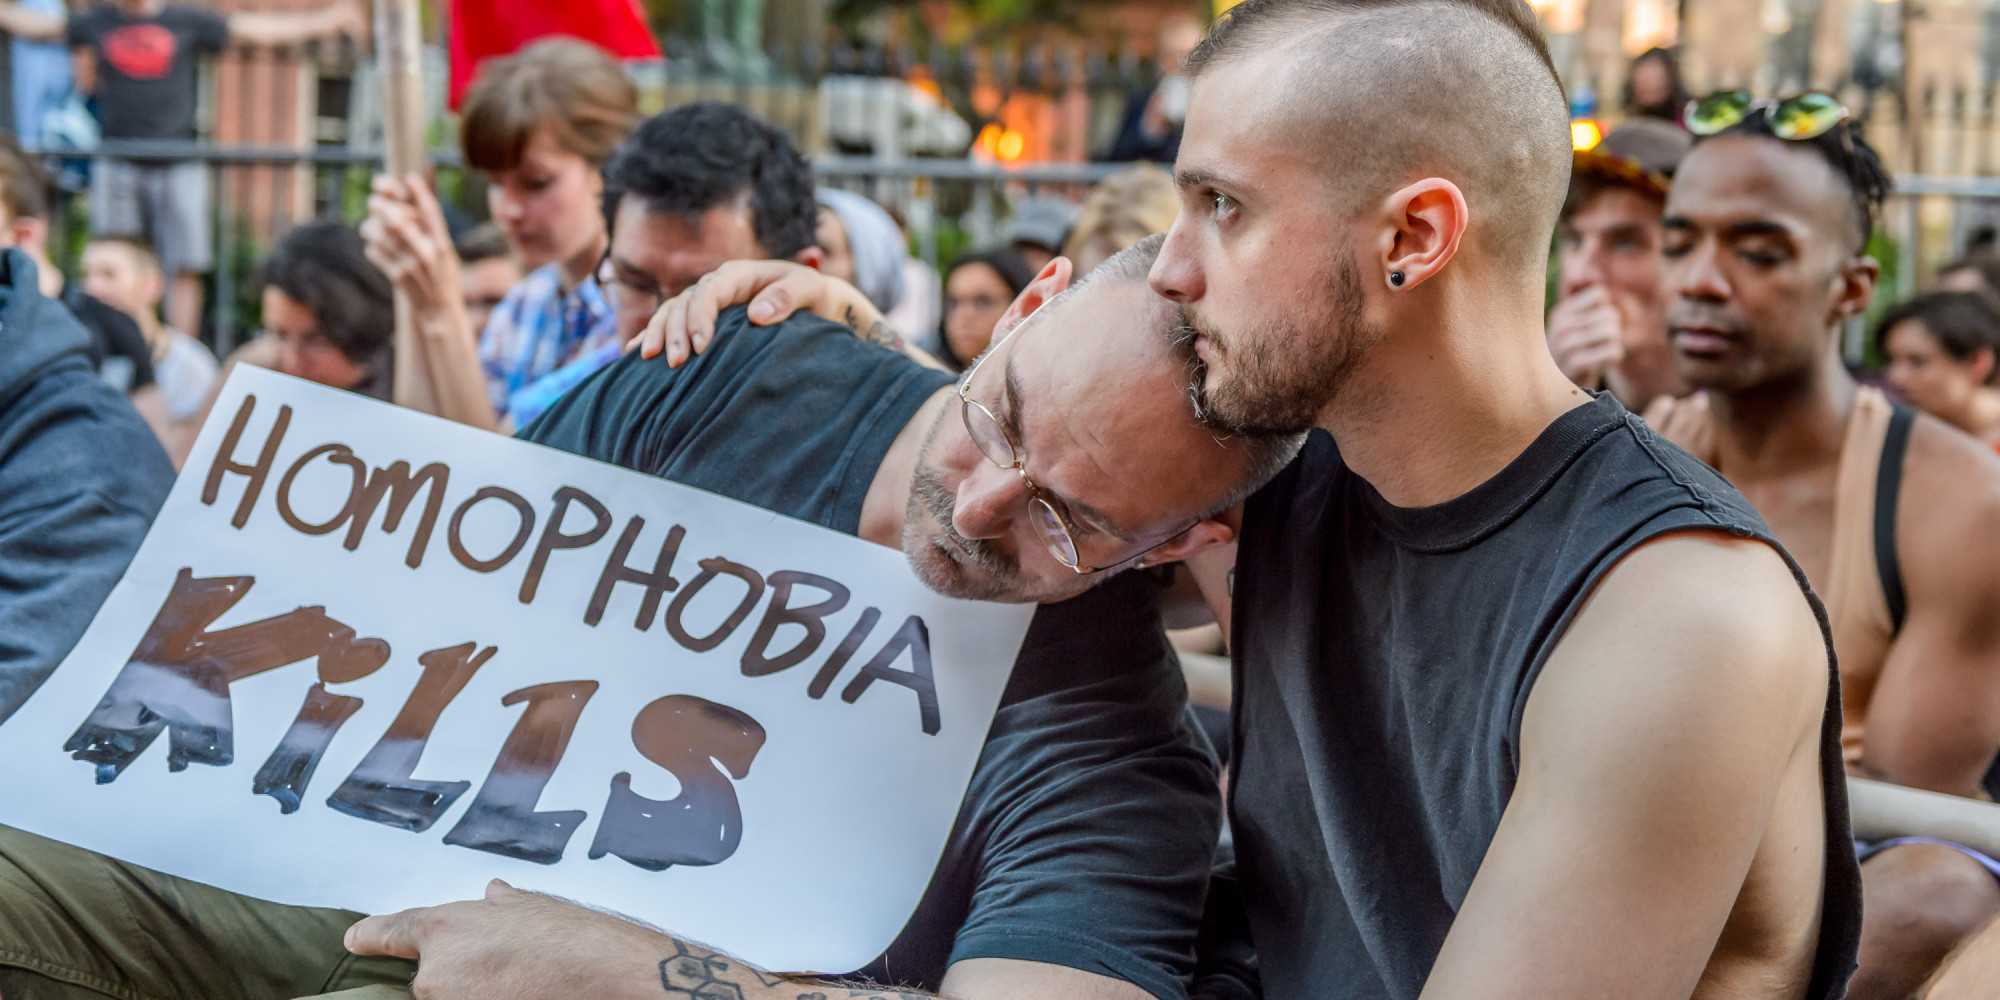 Чего боятся мужчины? мысли о гомофобии